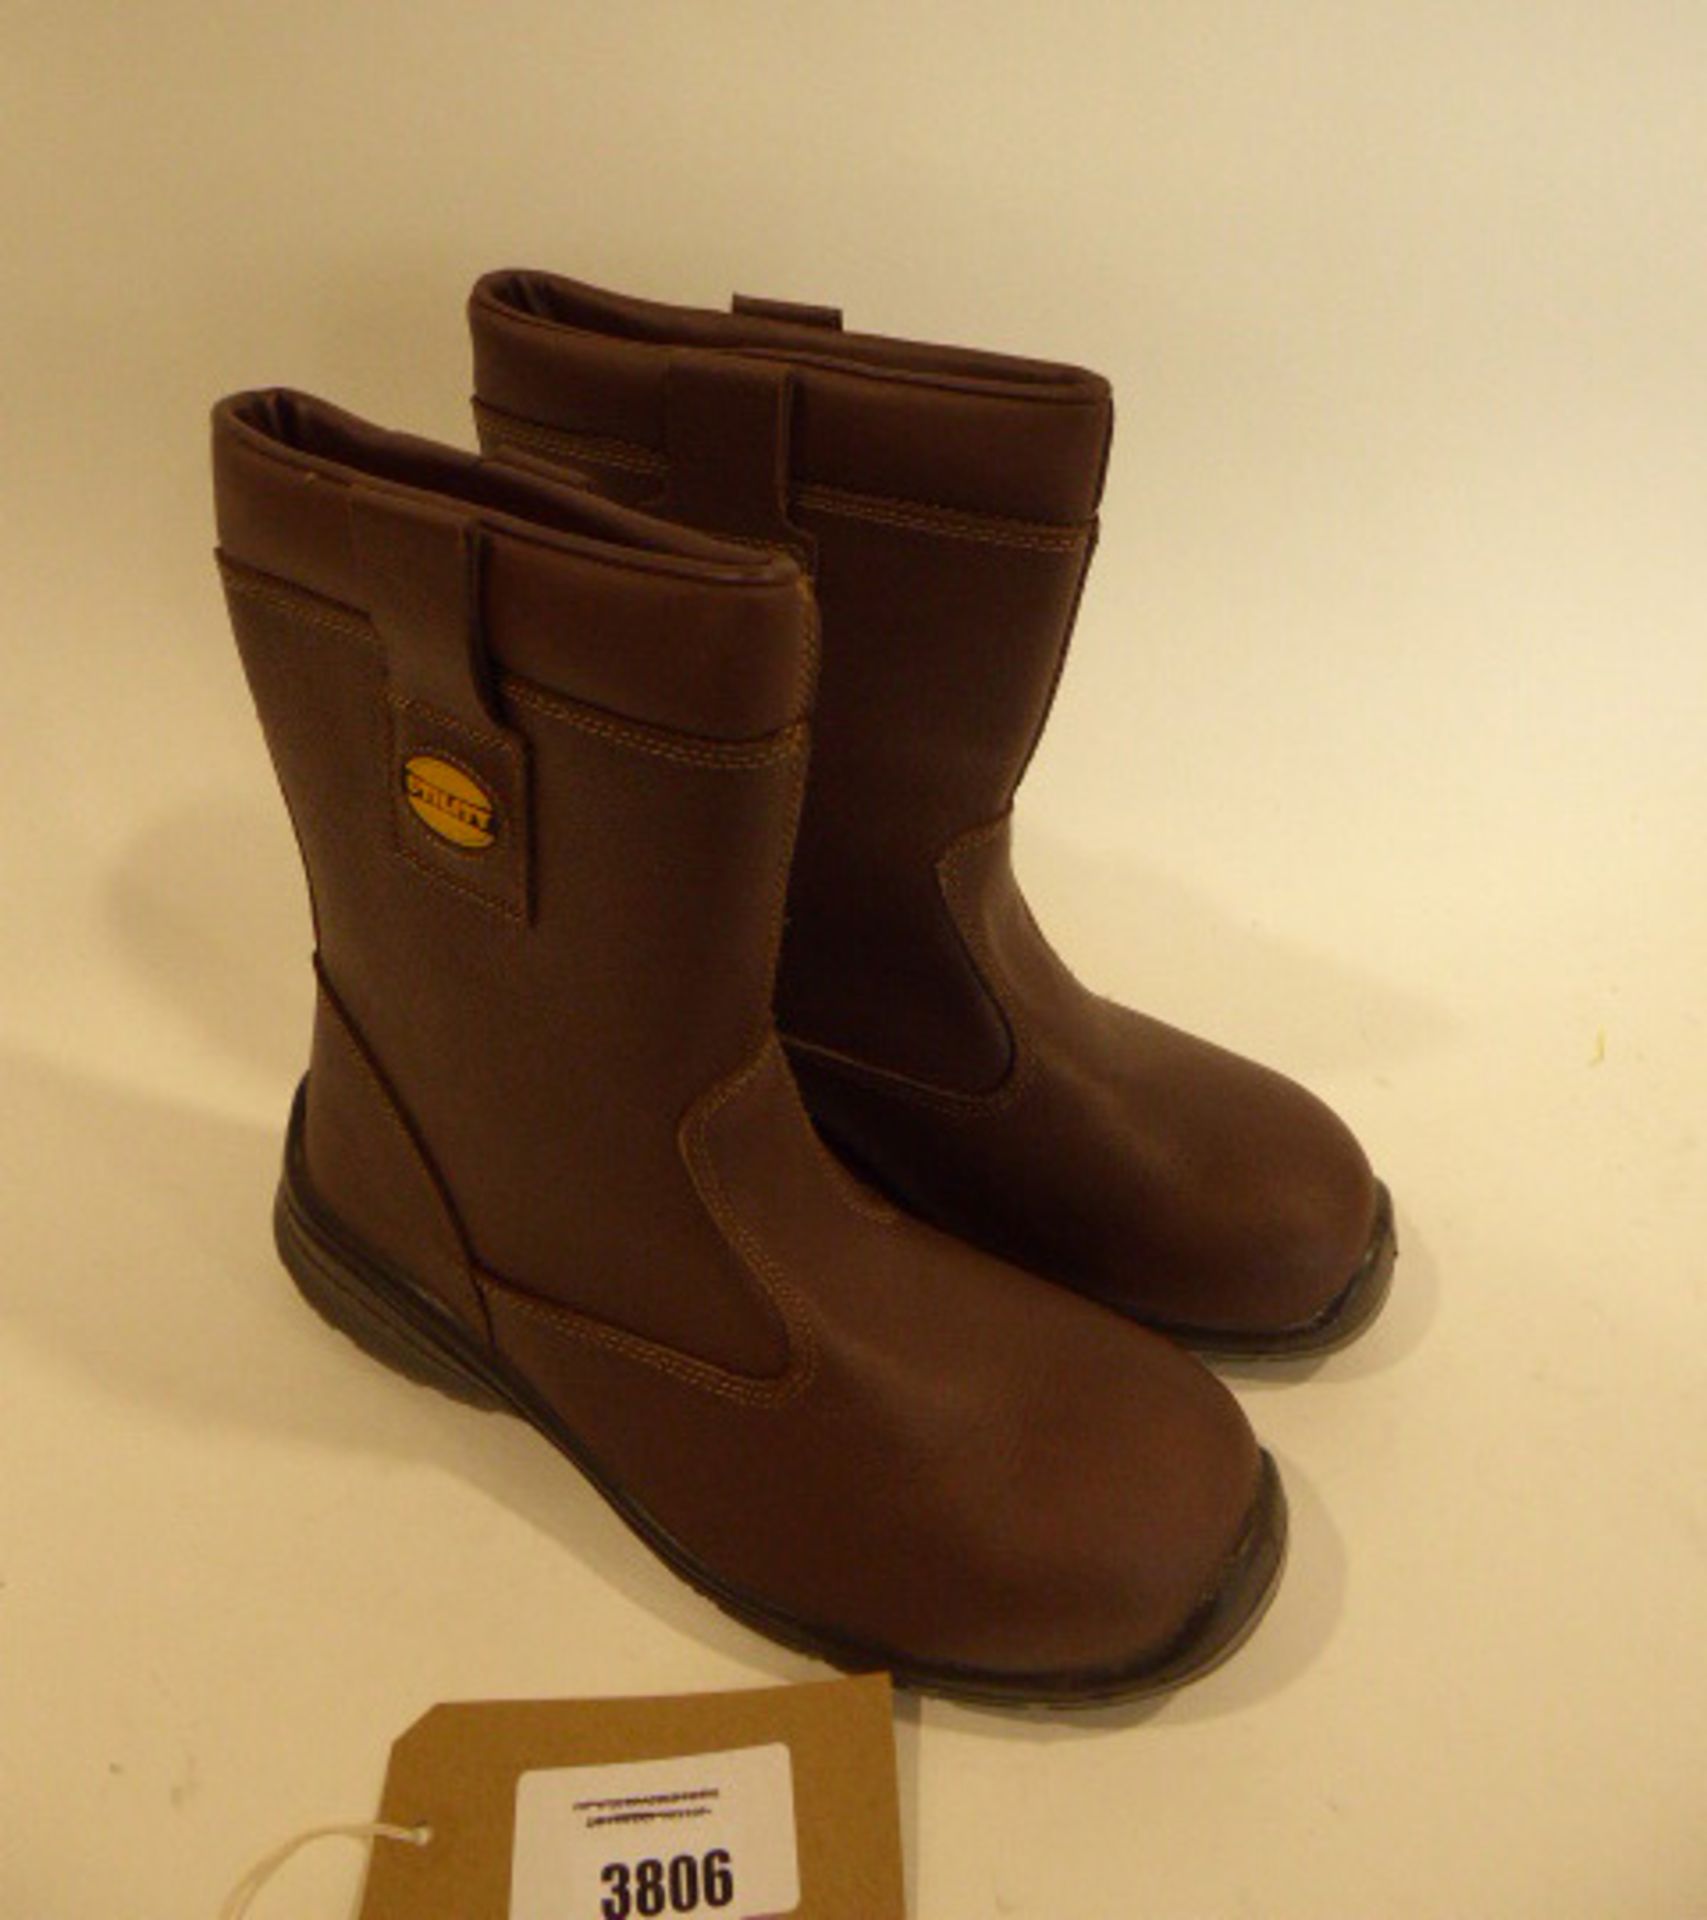 Diadora safety boots size EU 41 - Image 2 of 3